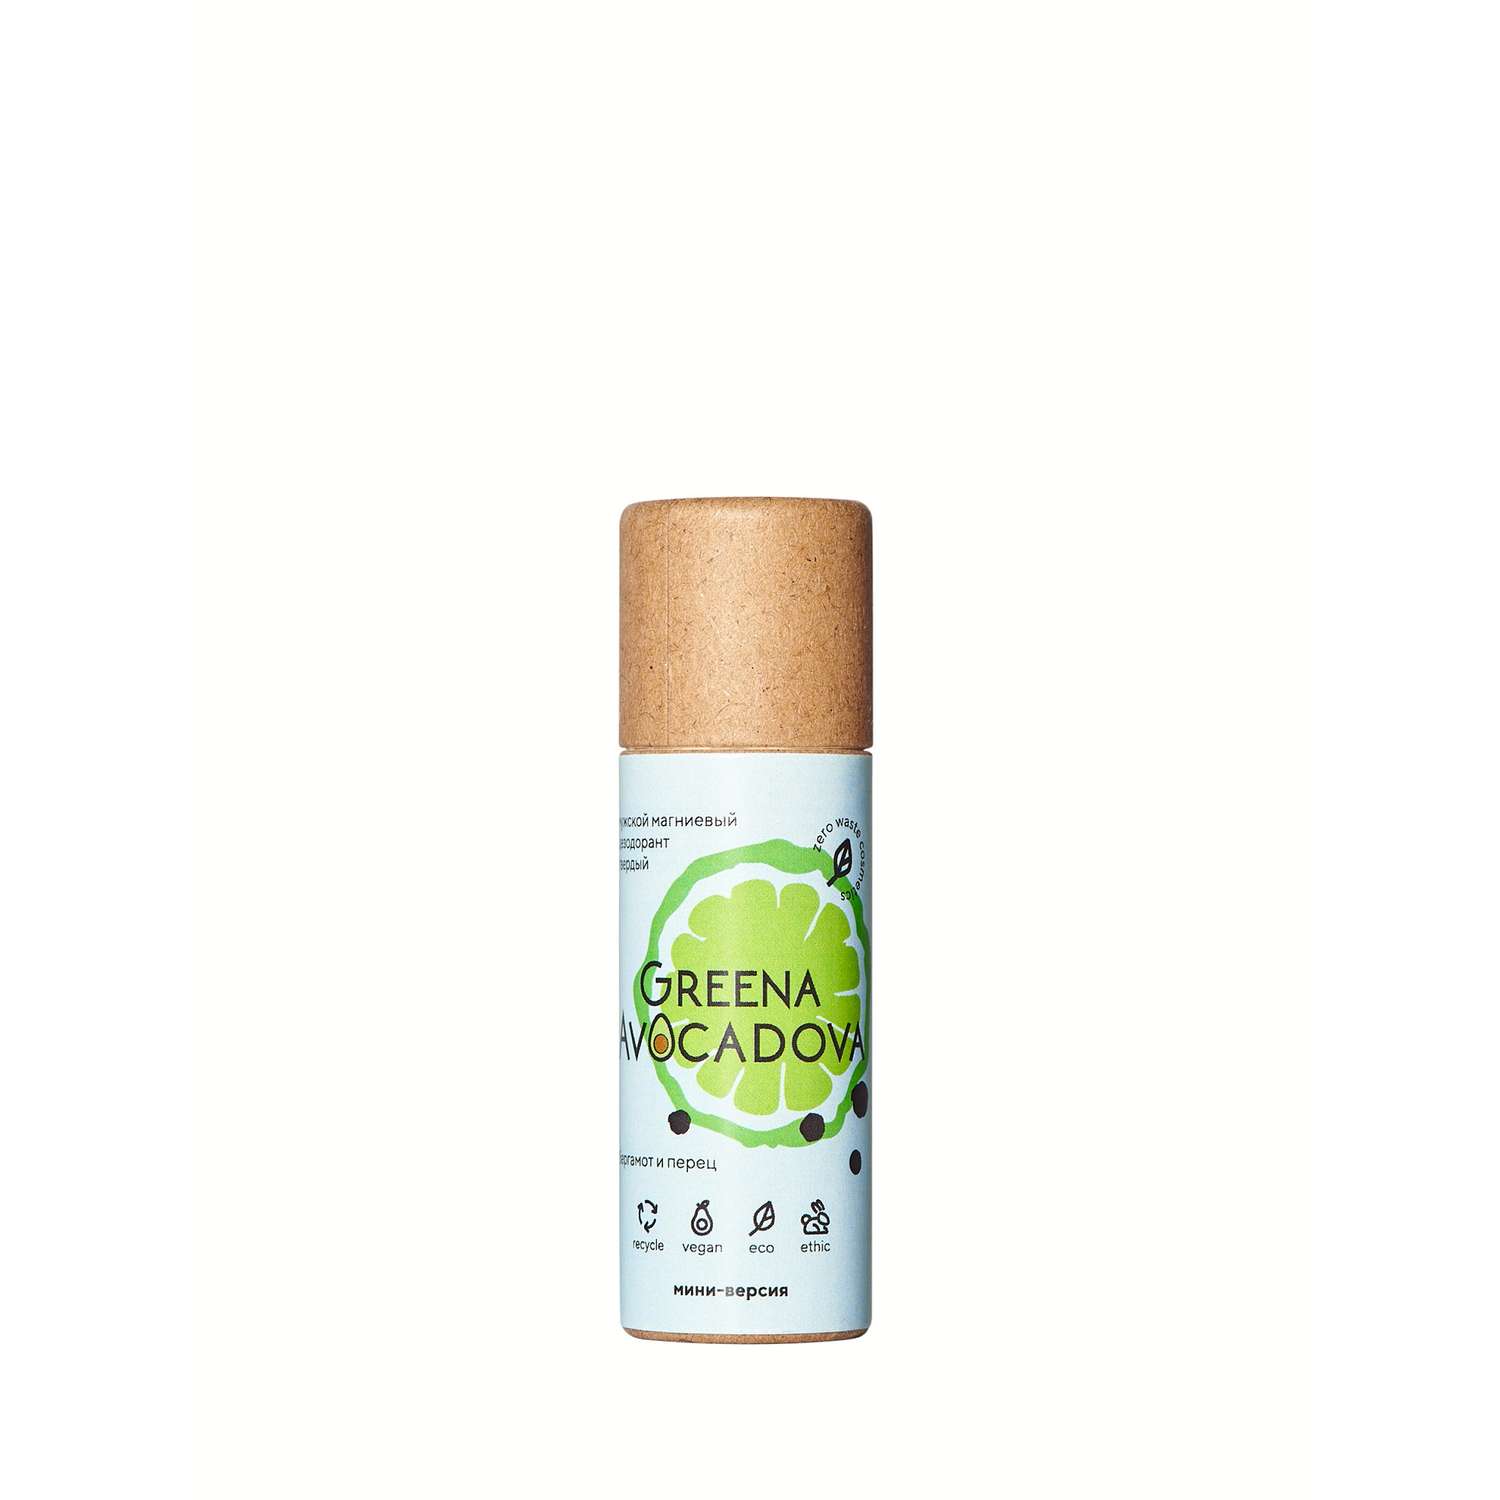 Натуральный твердый дезодорант Greena Avocadova Бергамот и перец мини-версия мужской - фото 2